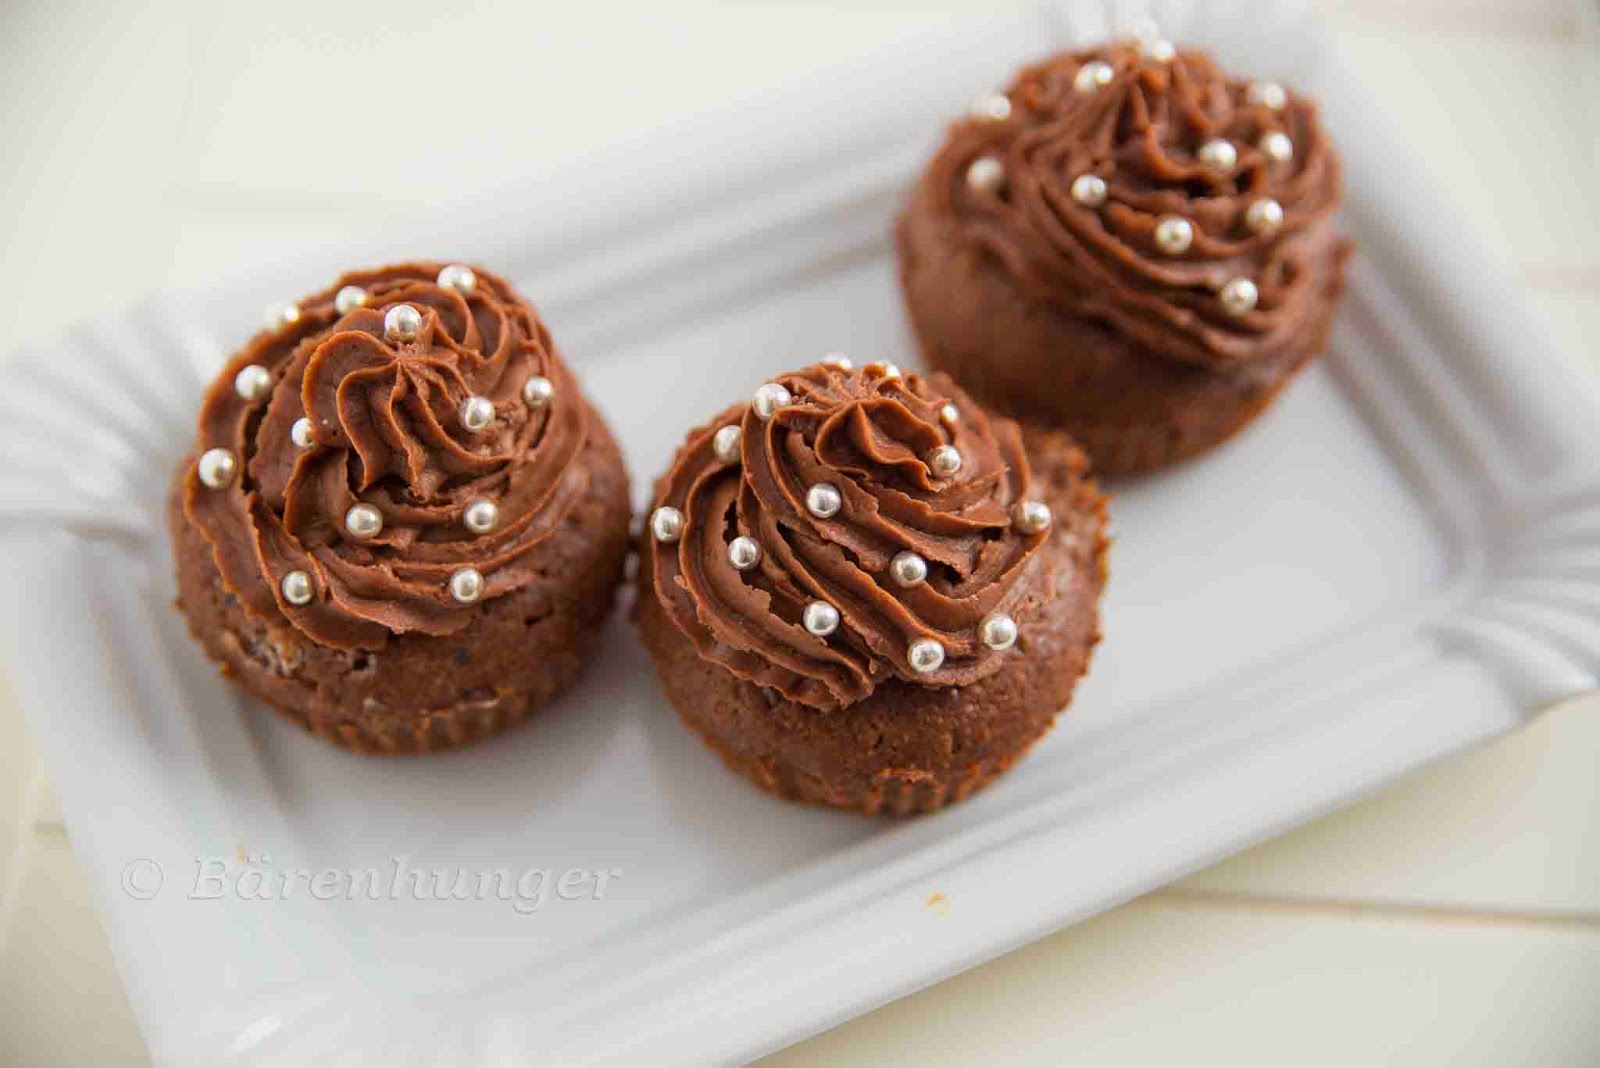 Schokoladen Buttercreme Cupcakes | Bärenhunger